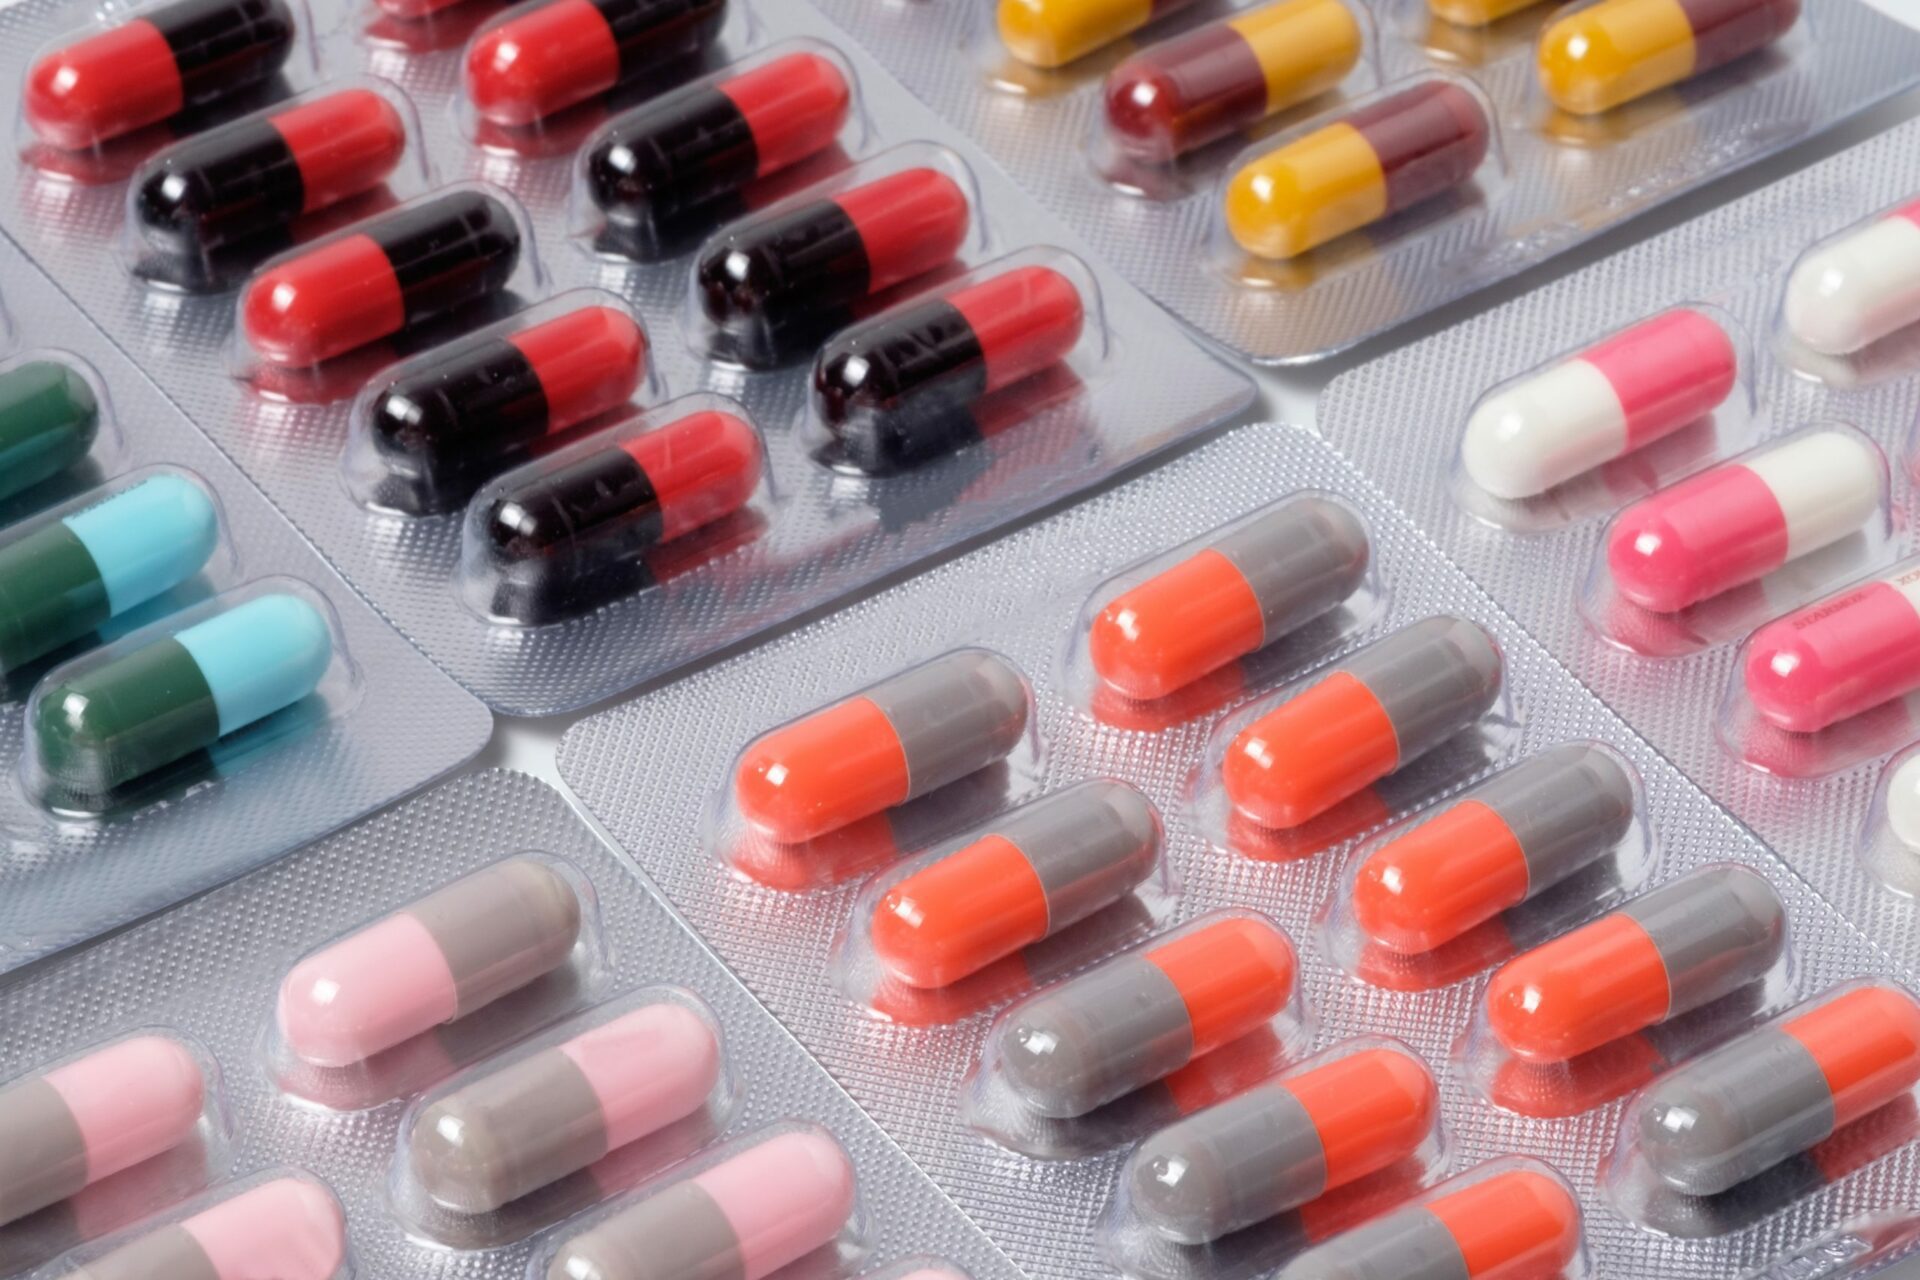 قد يؤدي عدم تناول جرعة كاملة من المضادات الحيوية التي وصفها طبيبك إلى زيادة مقاومة المضادات الحيوية.